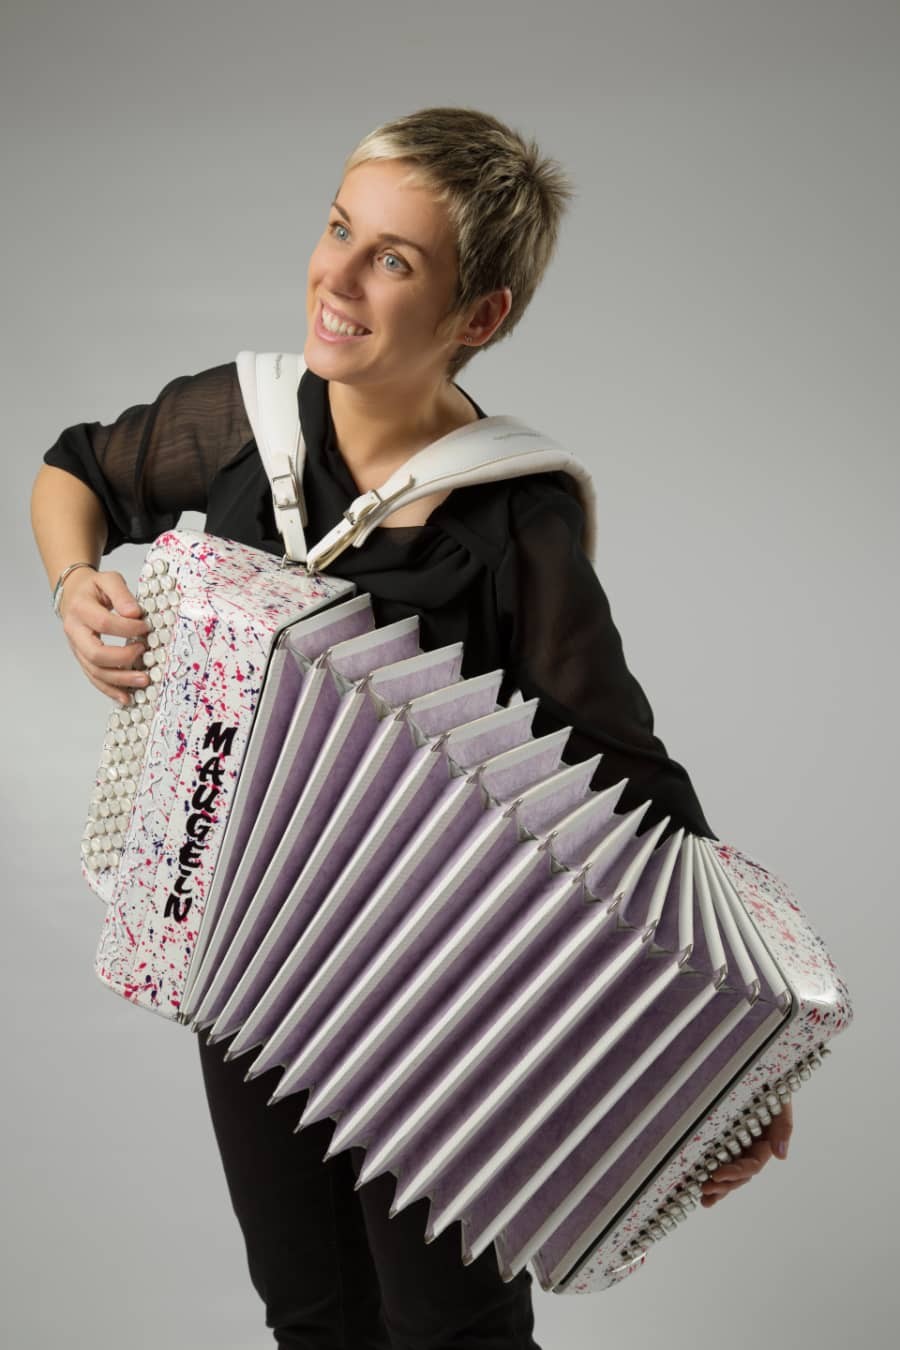 Véronique CADANSE accordeon